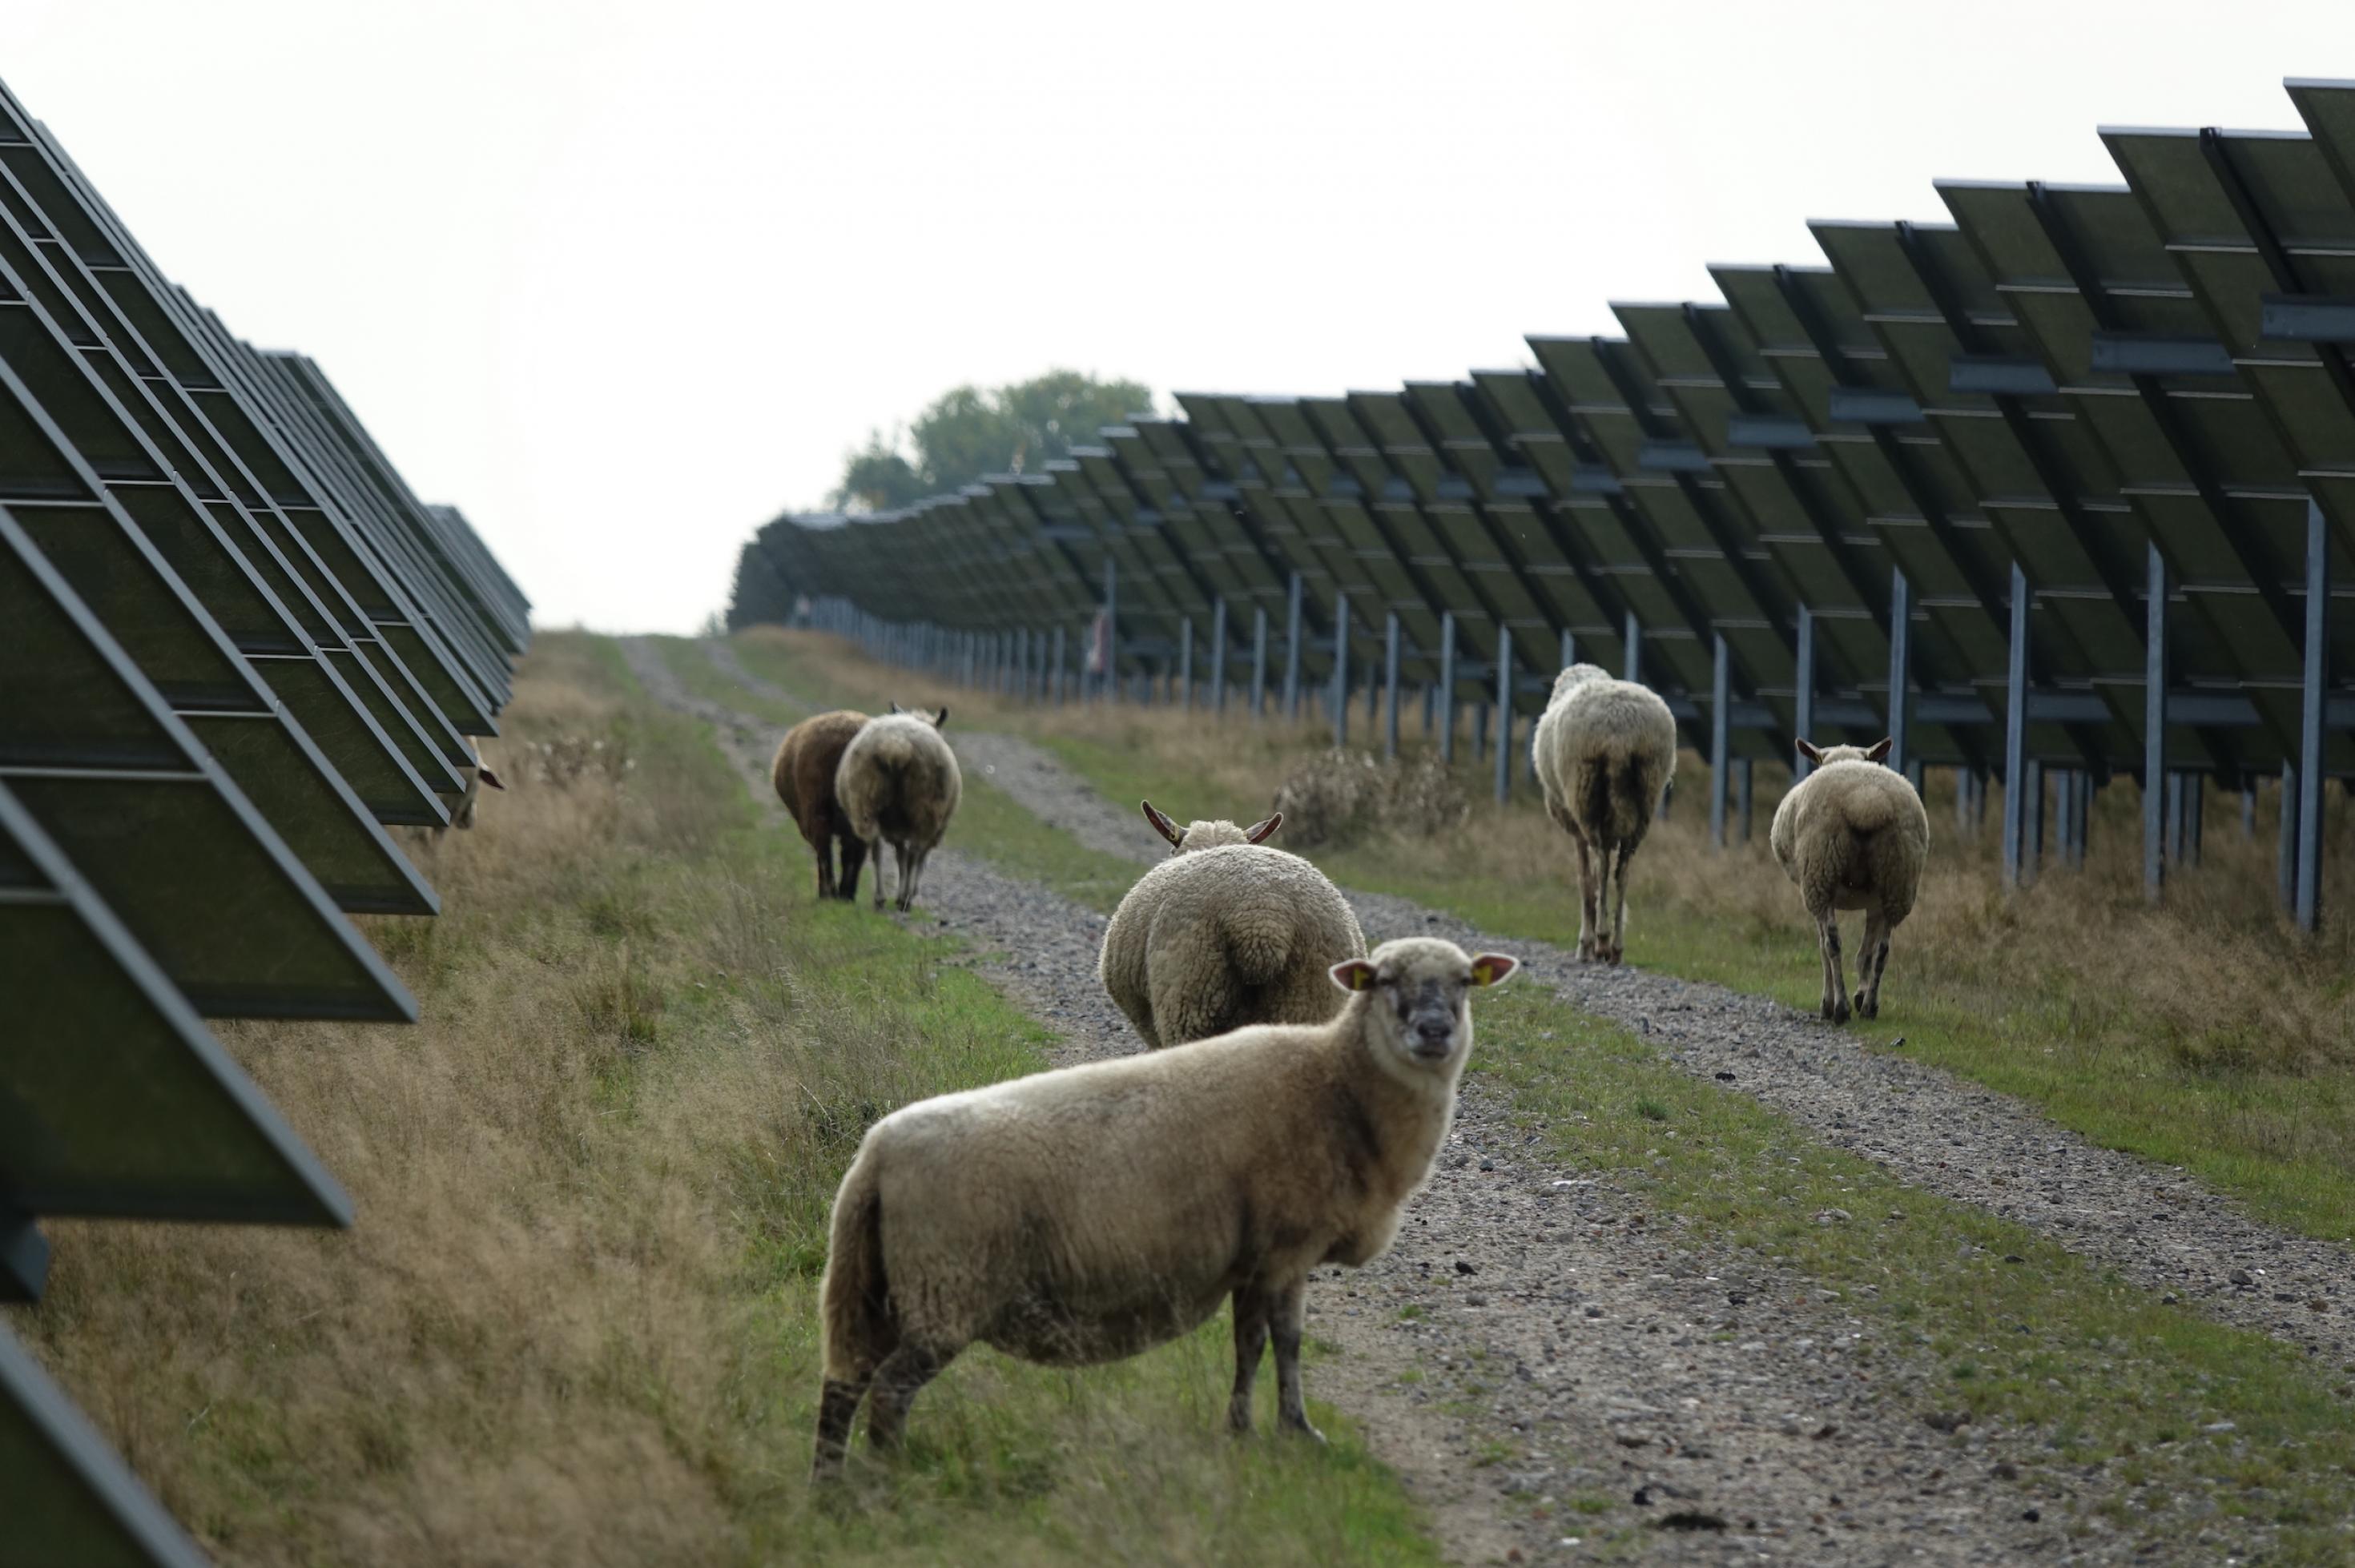 Schafe trotten auf einem Weg, der zwischen einer langen Reihe von Solarmodulen verläuft.